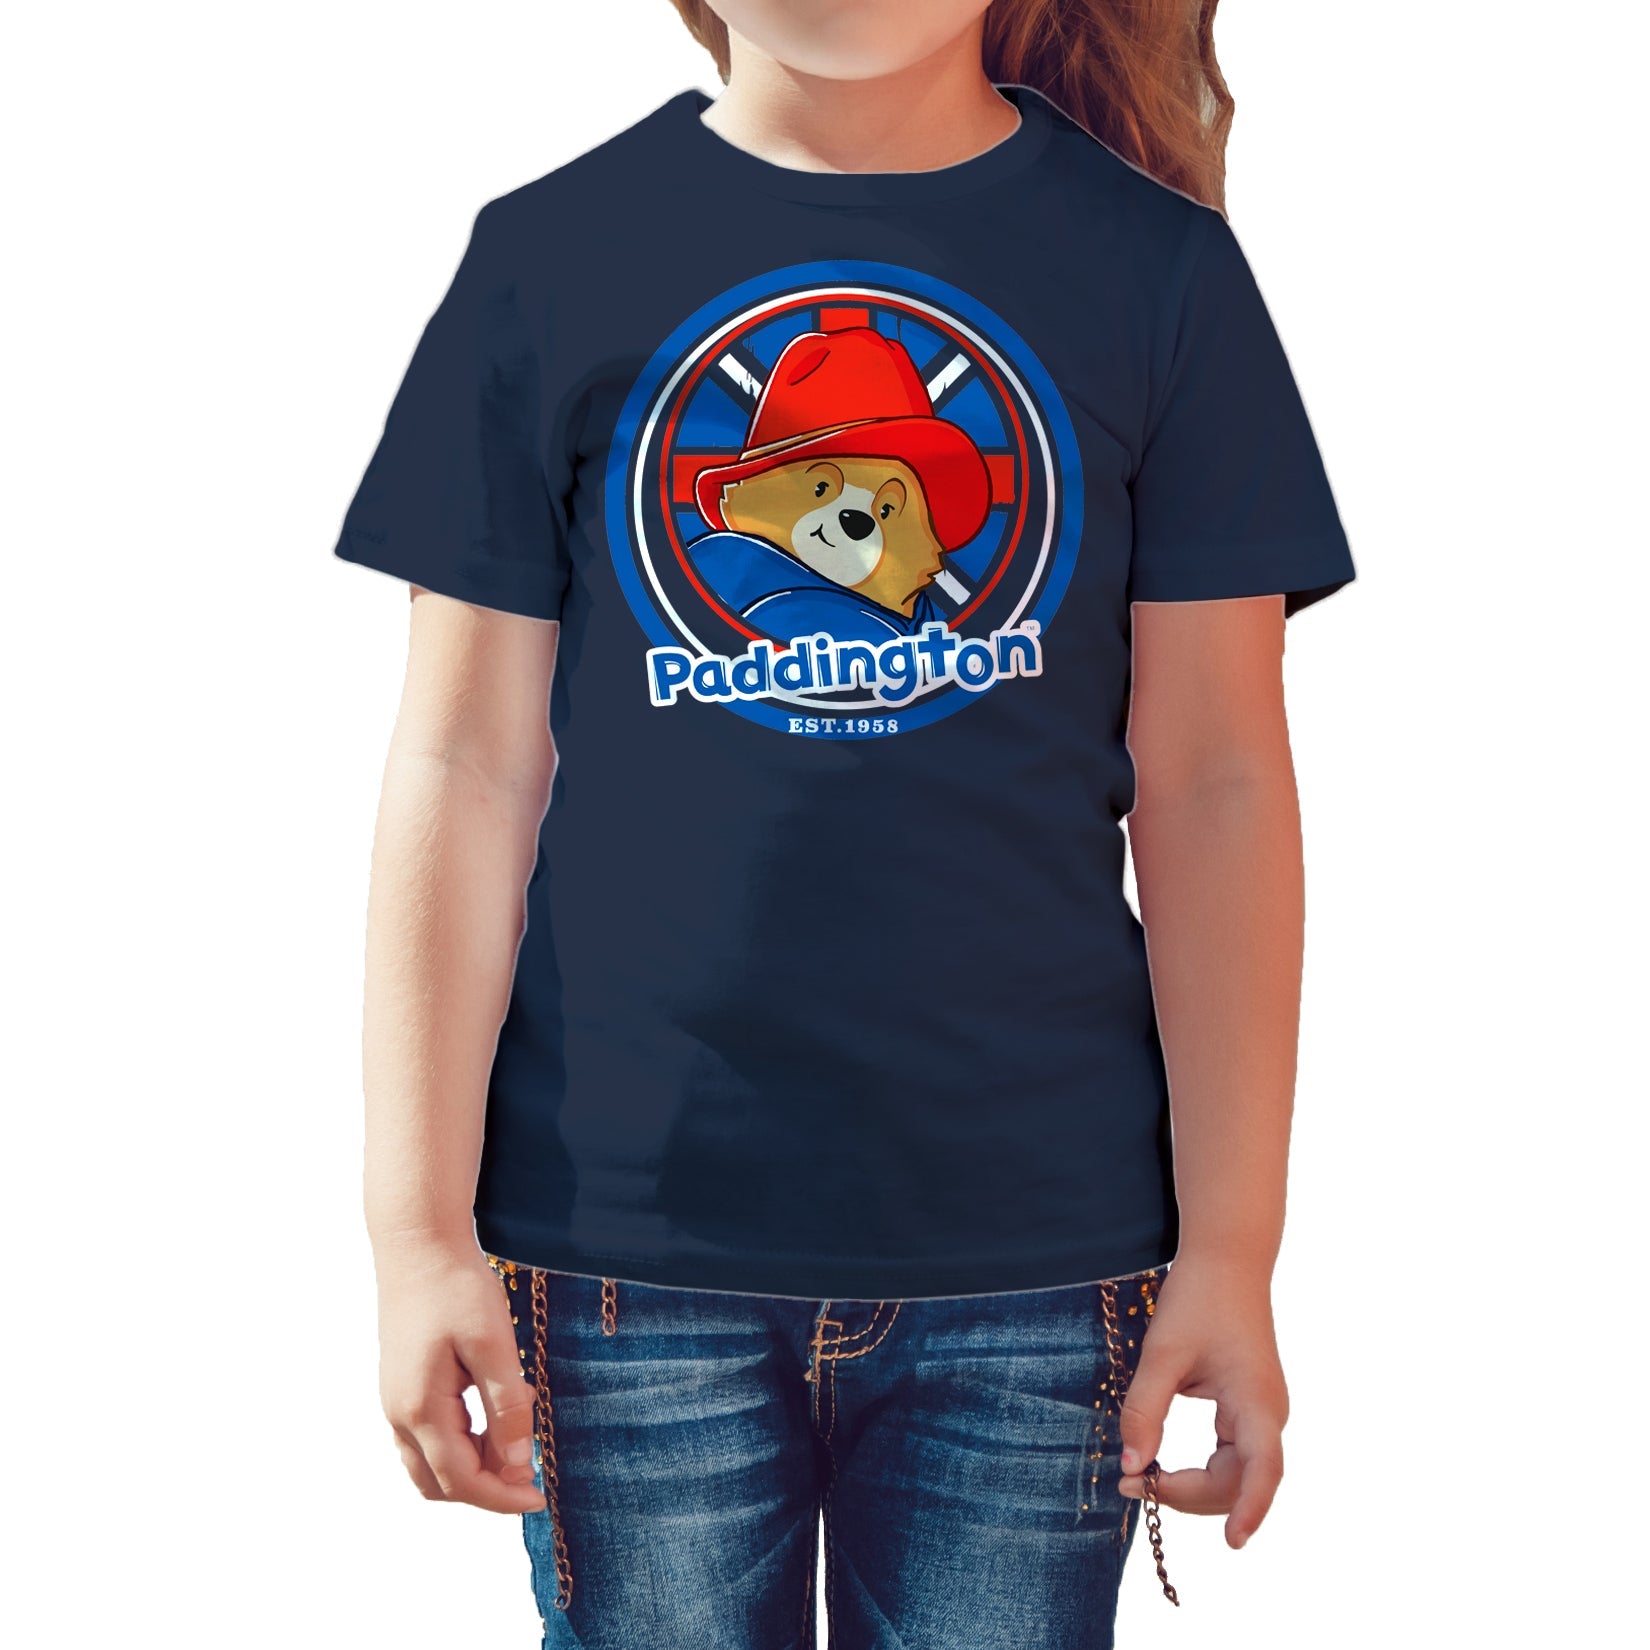 Paddington Bear Collegiate Badge Logo Smile Official Kid's T-shirt